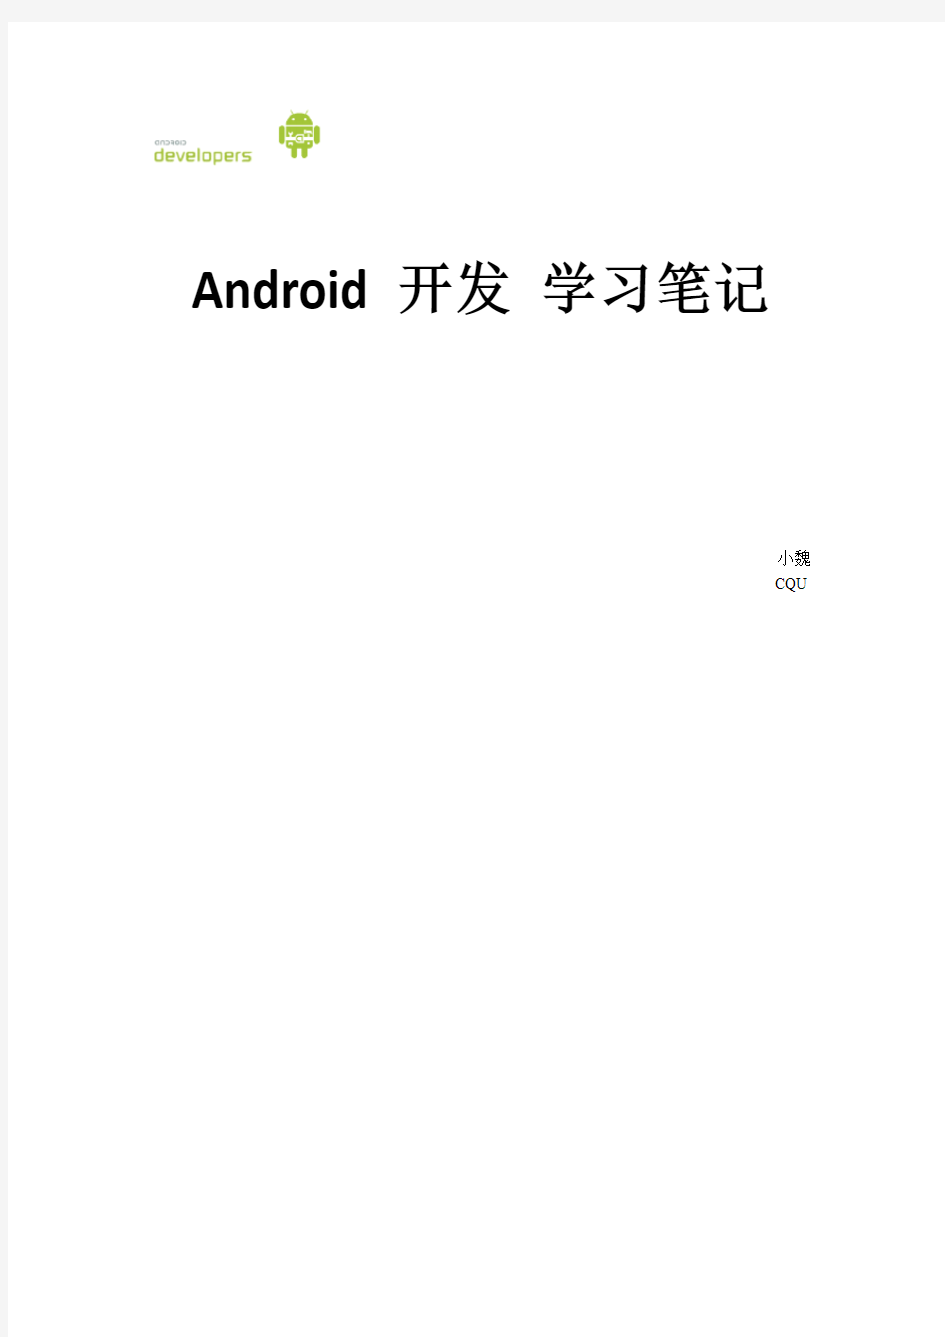 Android学习笔记整理